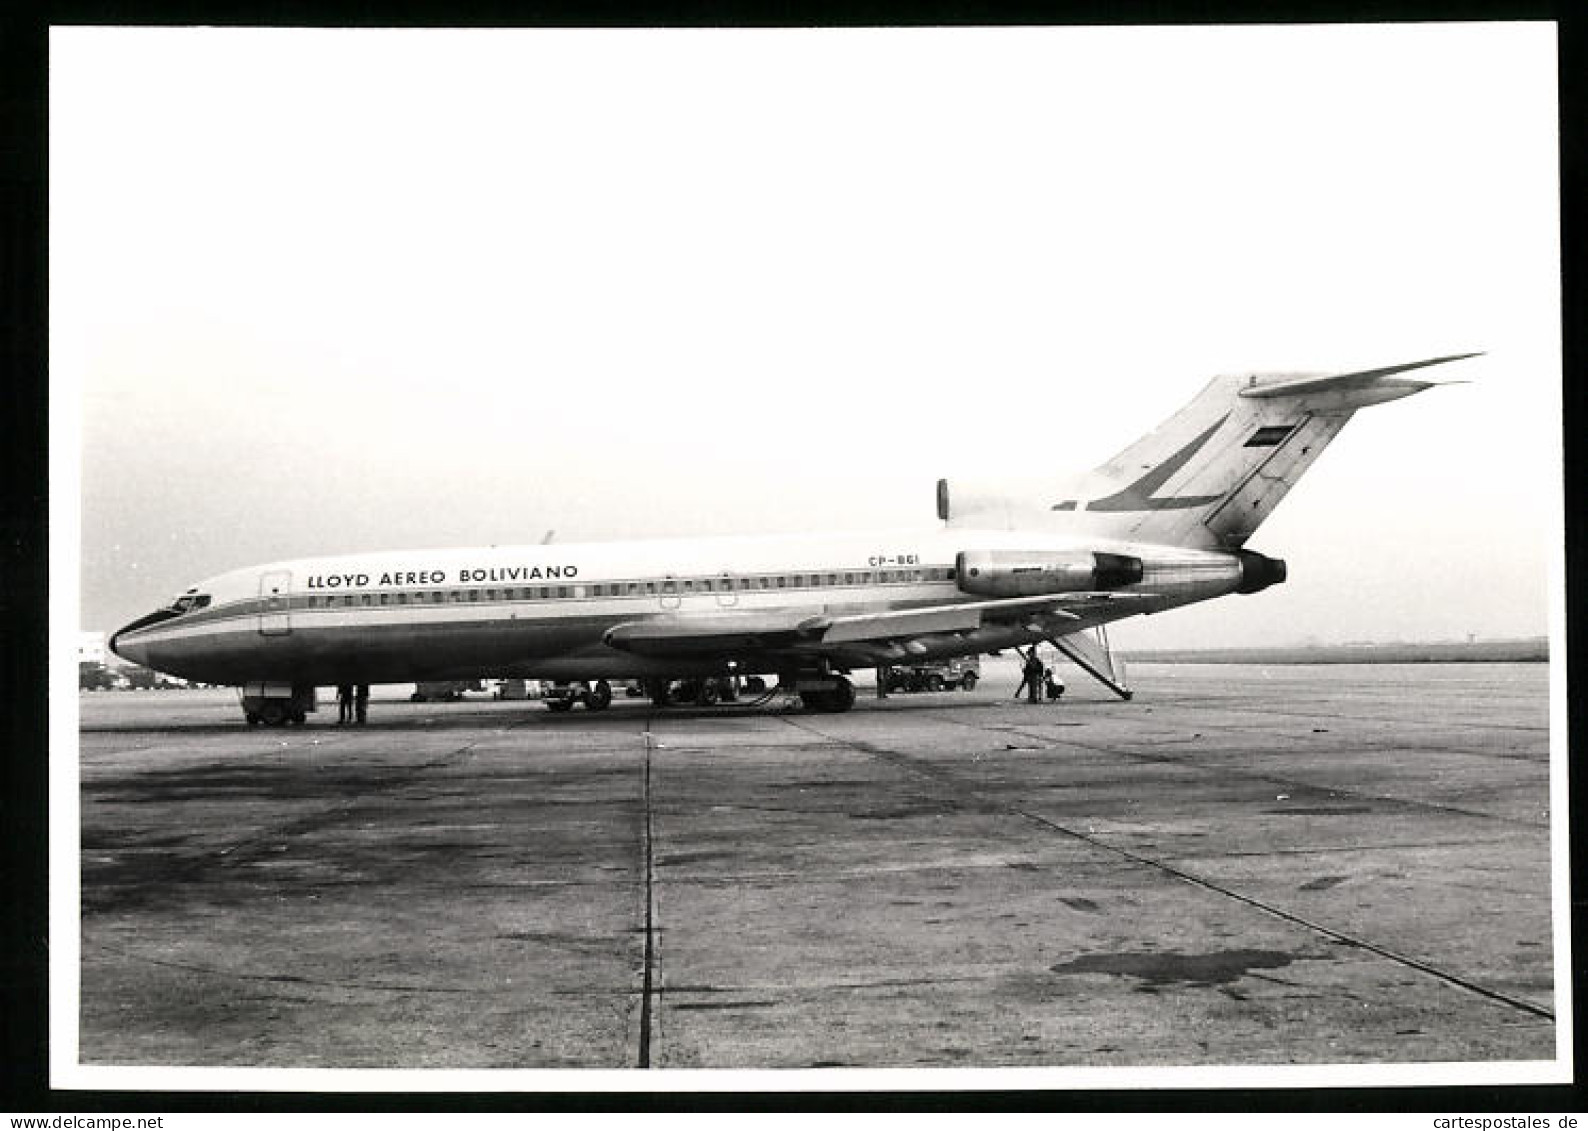 Fotografie Flugzeug Boeing 727, Passagierflugzeug Lloyd Aereo Boliviano, Kennung CP-861  - Luftfahrt